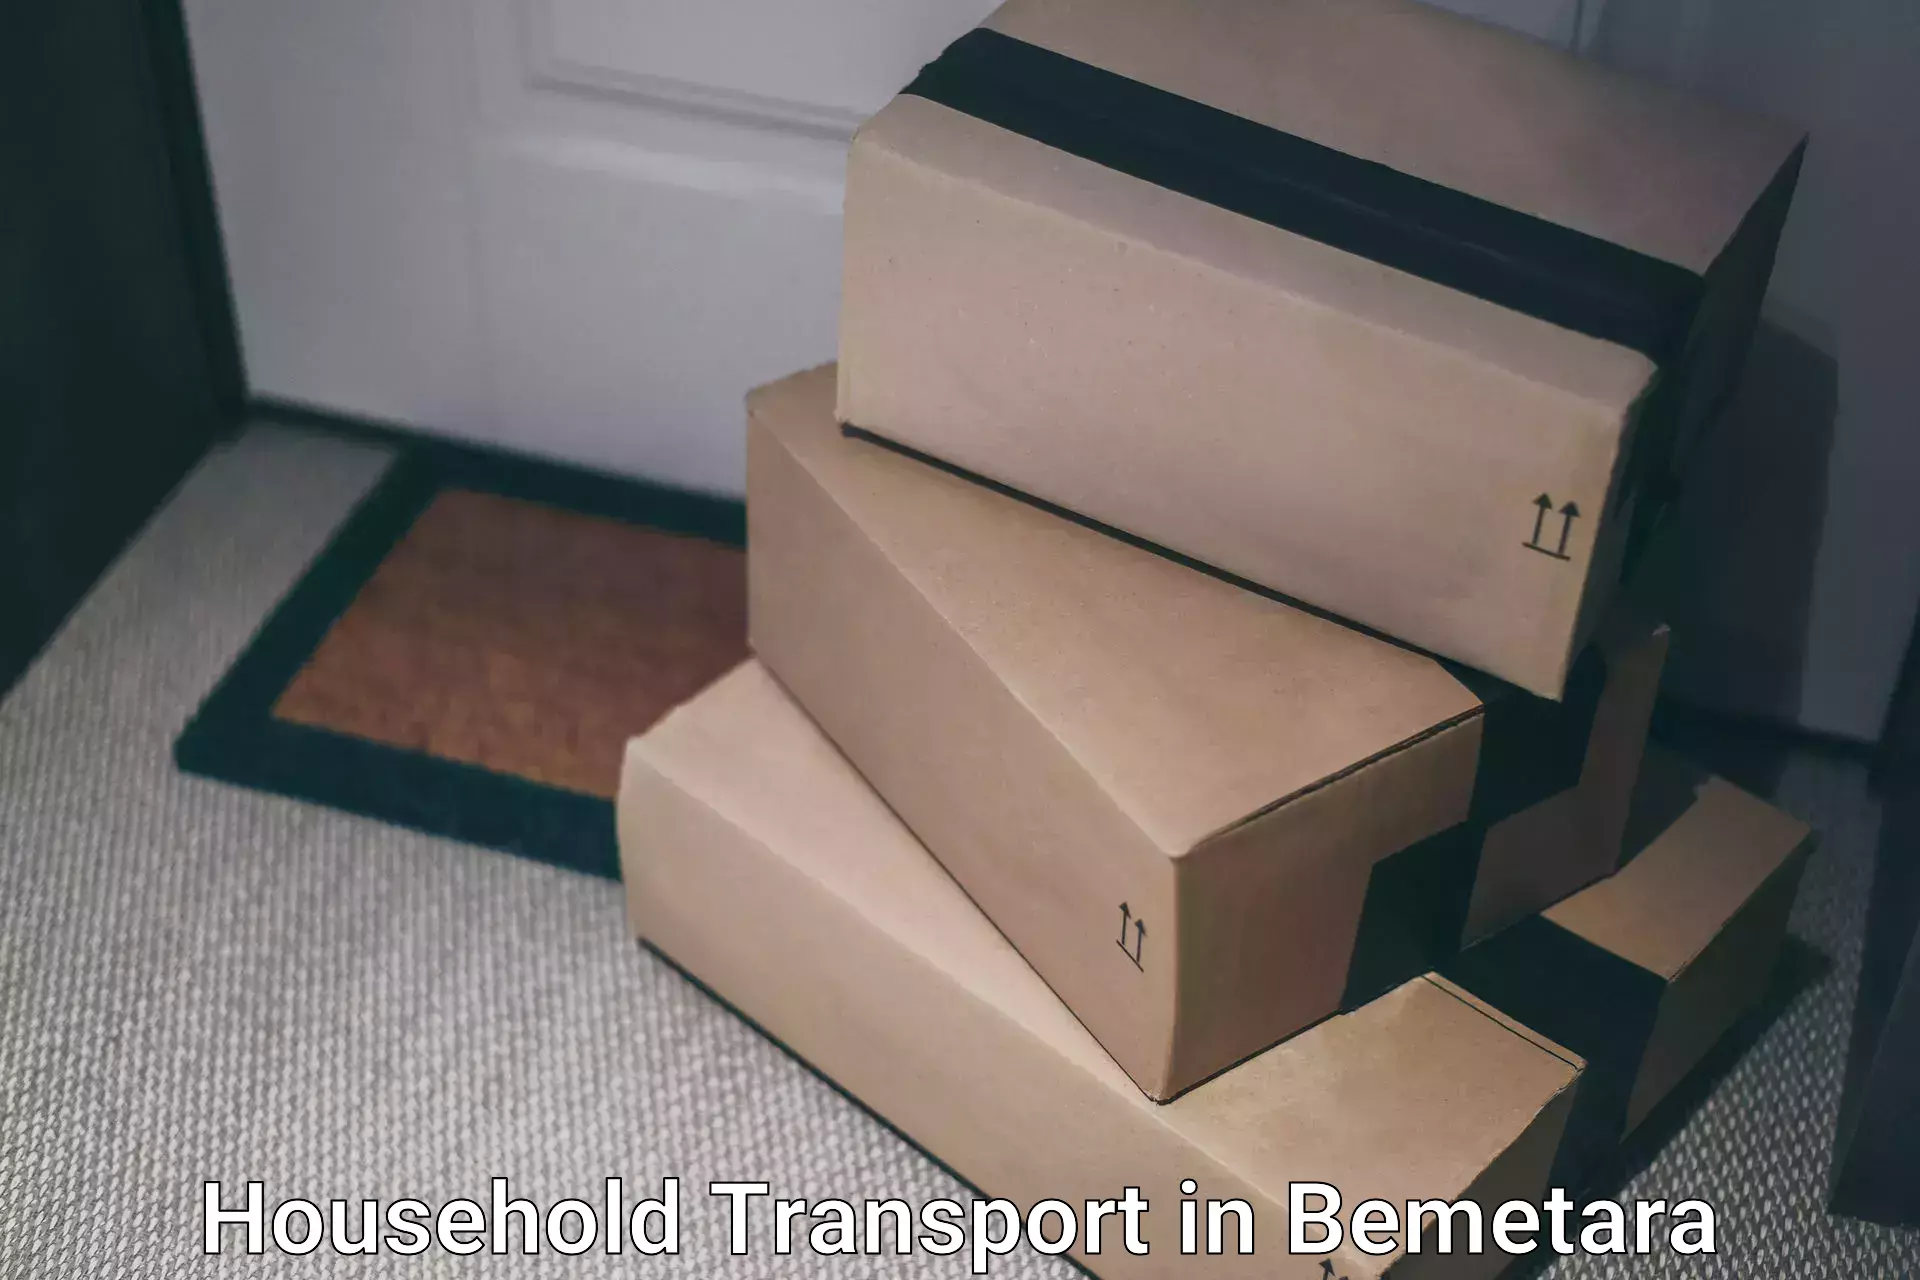 Household goods transport in Bemetara